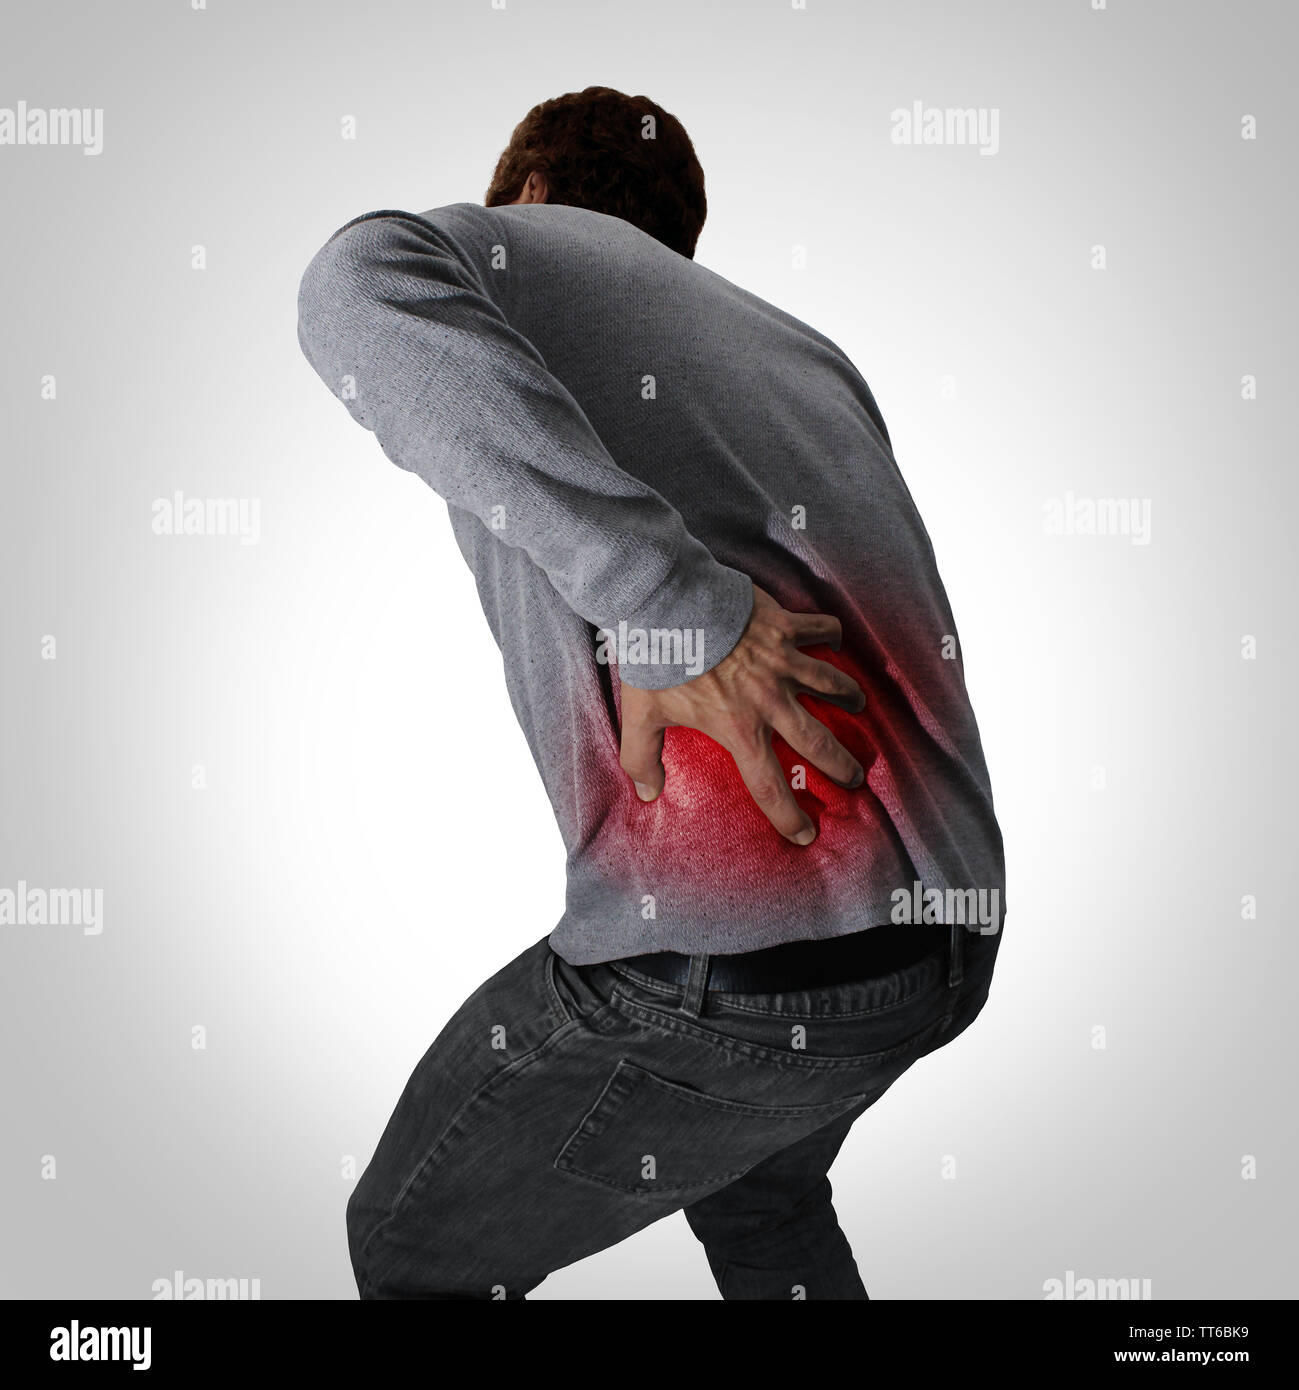 Schmerzhafte Symptome zurück und der unteren Wirbelsäule Schmerzen oder Rückenschmerzen und Schmerzen der Wirbelsäule medizinisches Konzept als eine Person, die im Besitz der schmerzhaften Bereich als medizinisches Konzept. Stockfoto